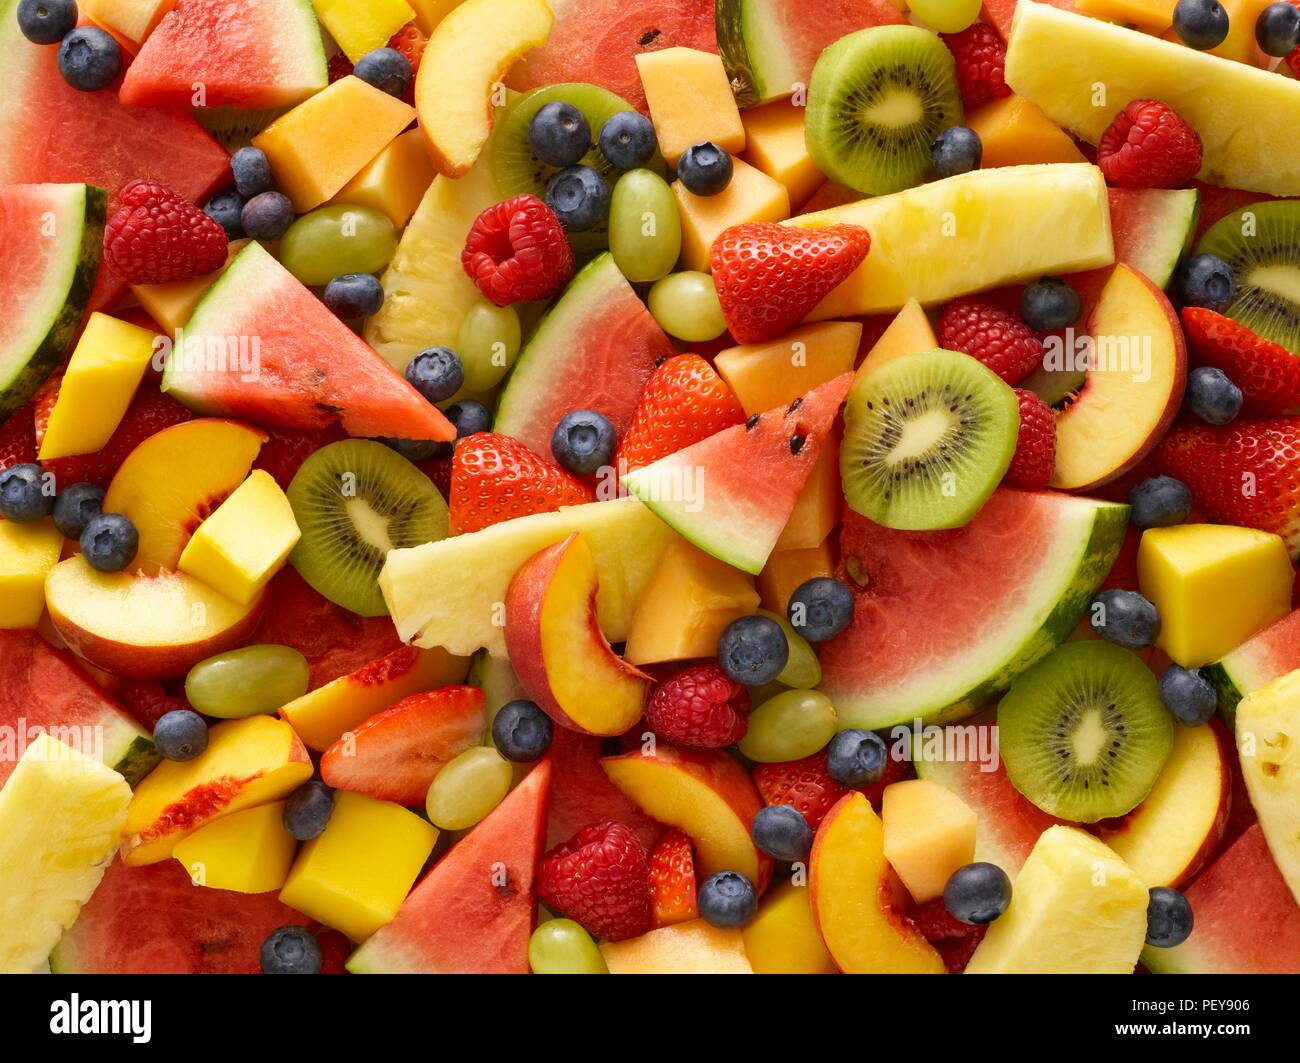 Variety of fresh fruit, full frame. Stock Photo